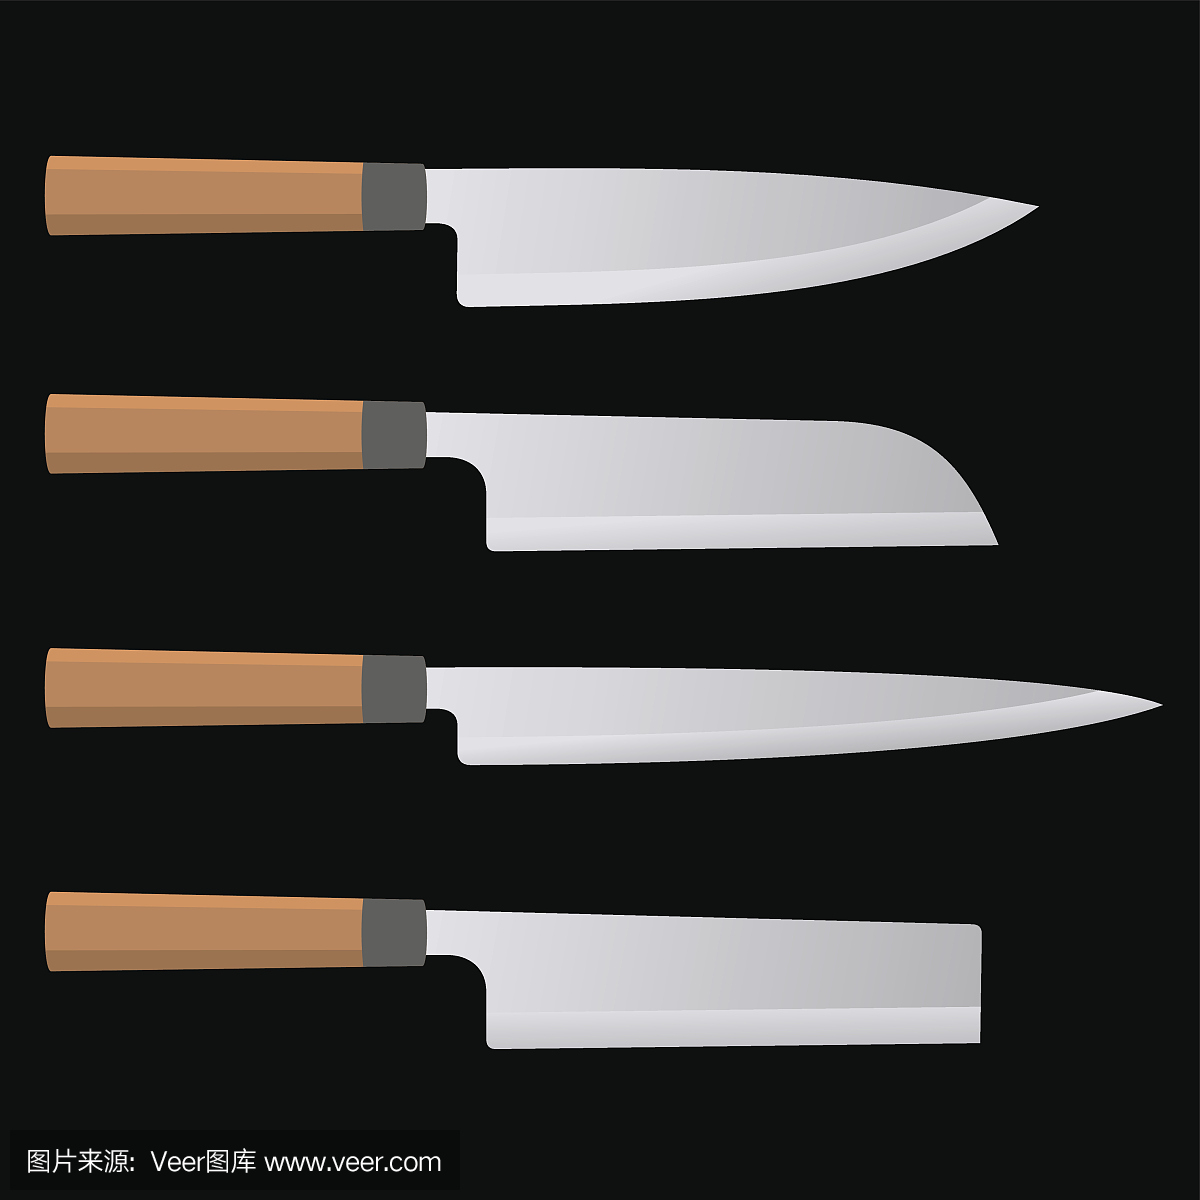 一套日本厨刀用木柄。向量